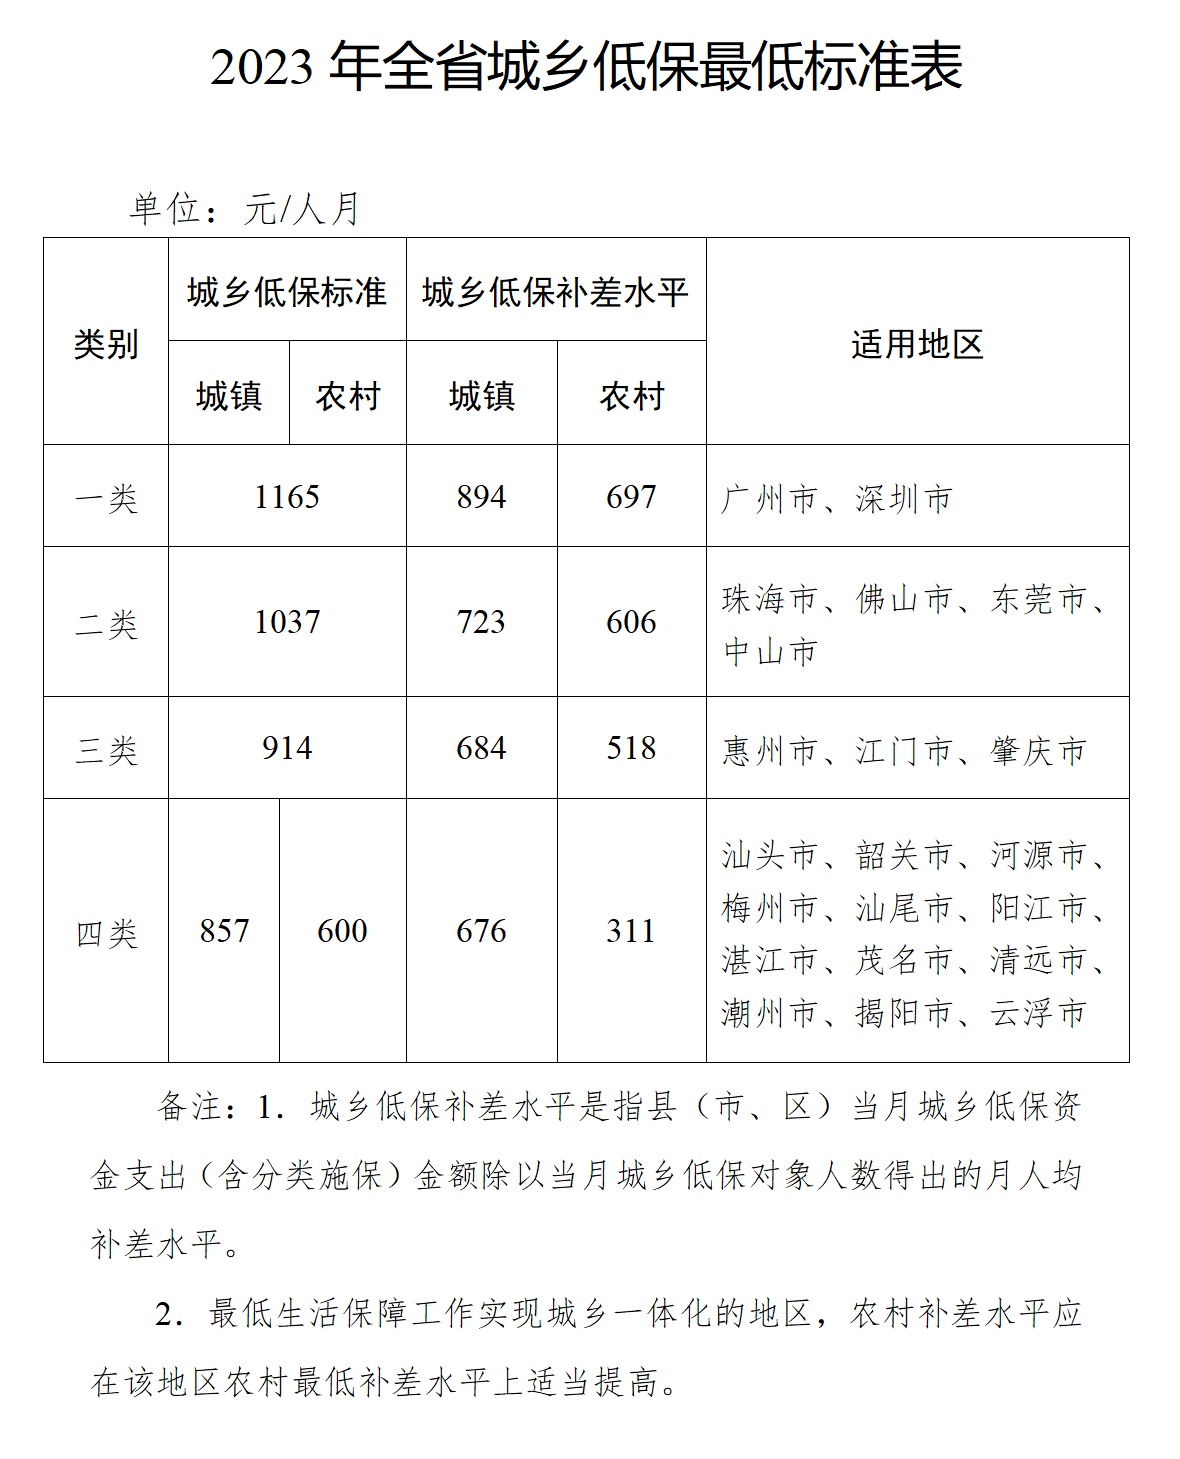 2023年广东城乡低保最低标准提高3.5%